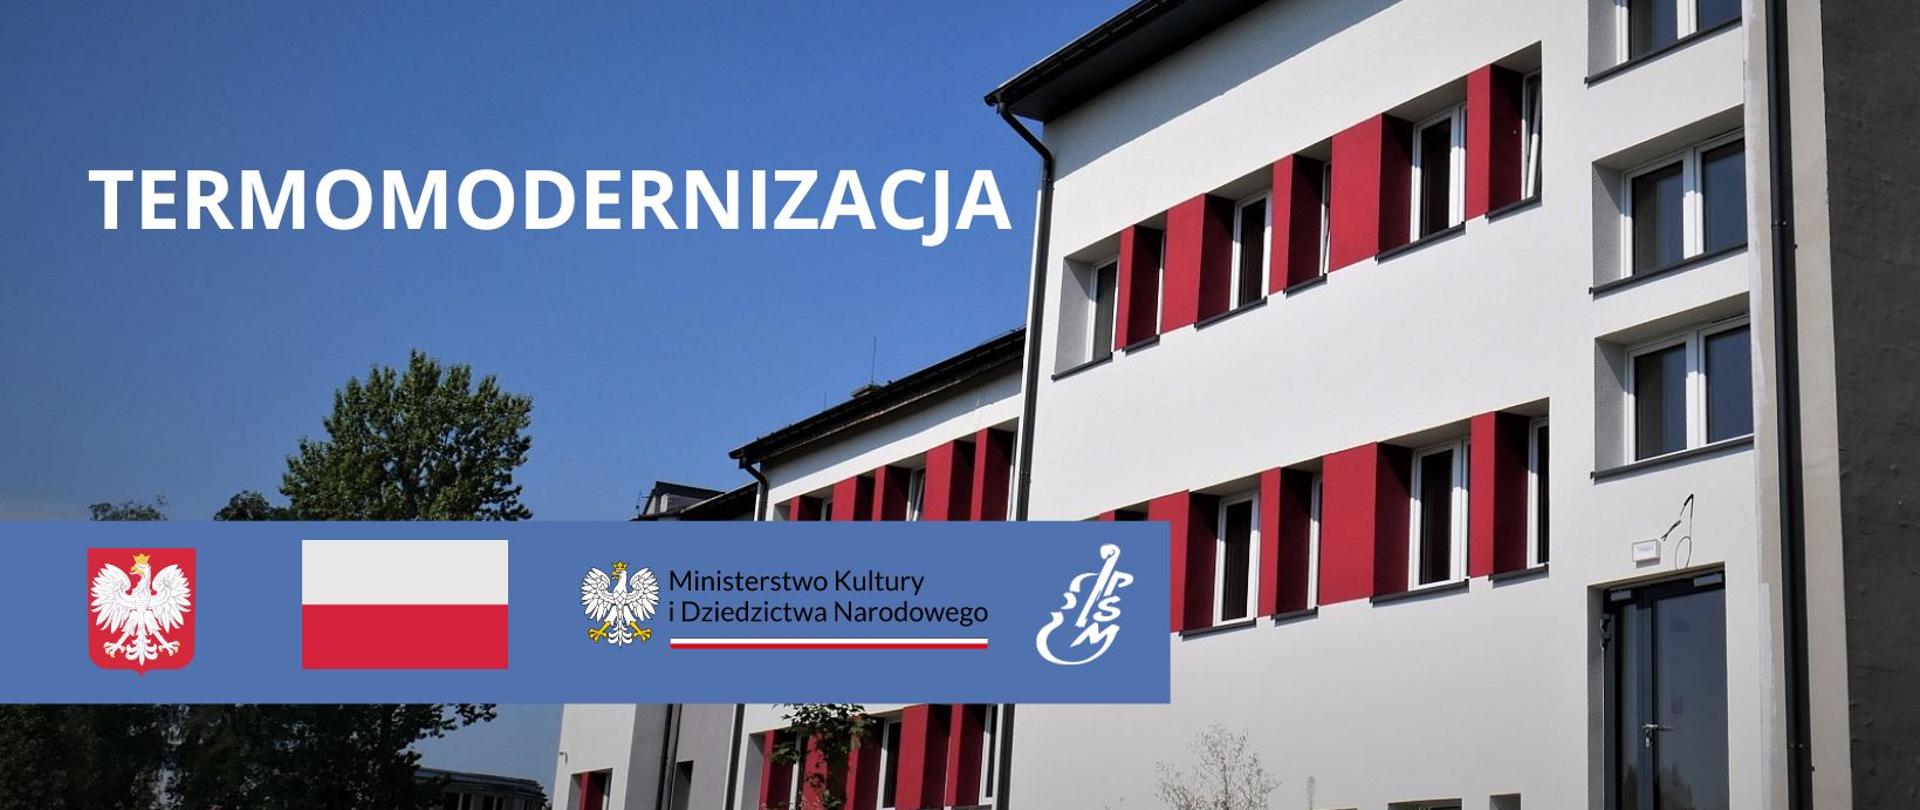 Zdjęcie budynku szkoły z napisem "termomodernizacja" i godłem i flagą Polski oraz logotypami MKiDN i szkoły